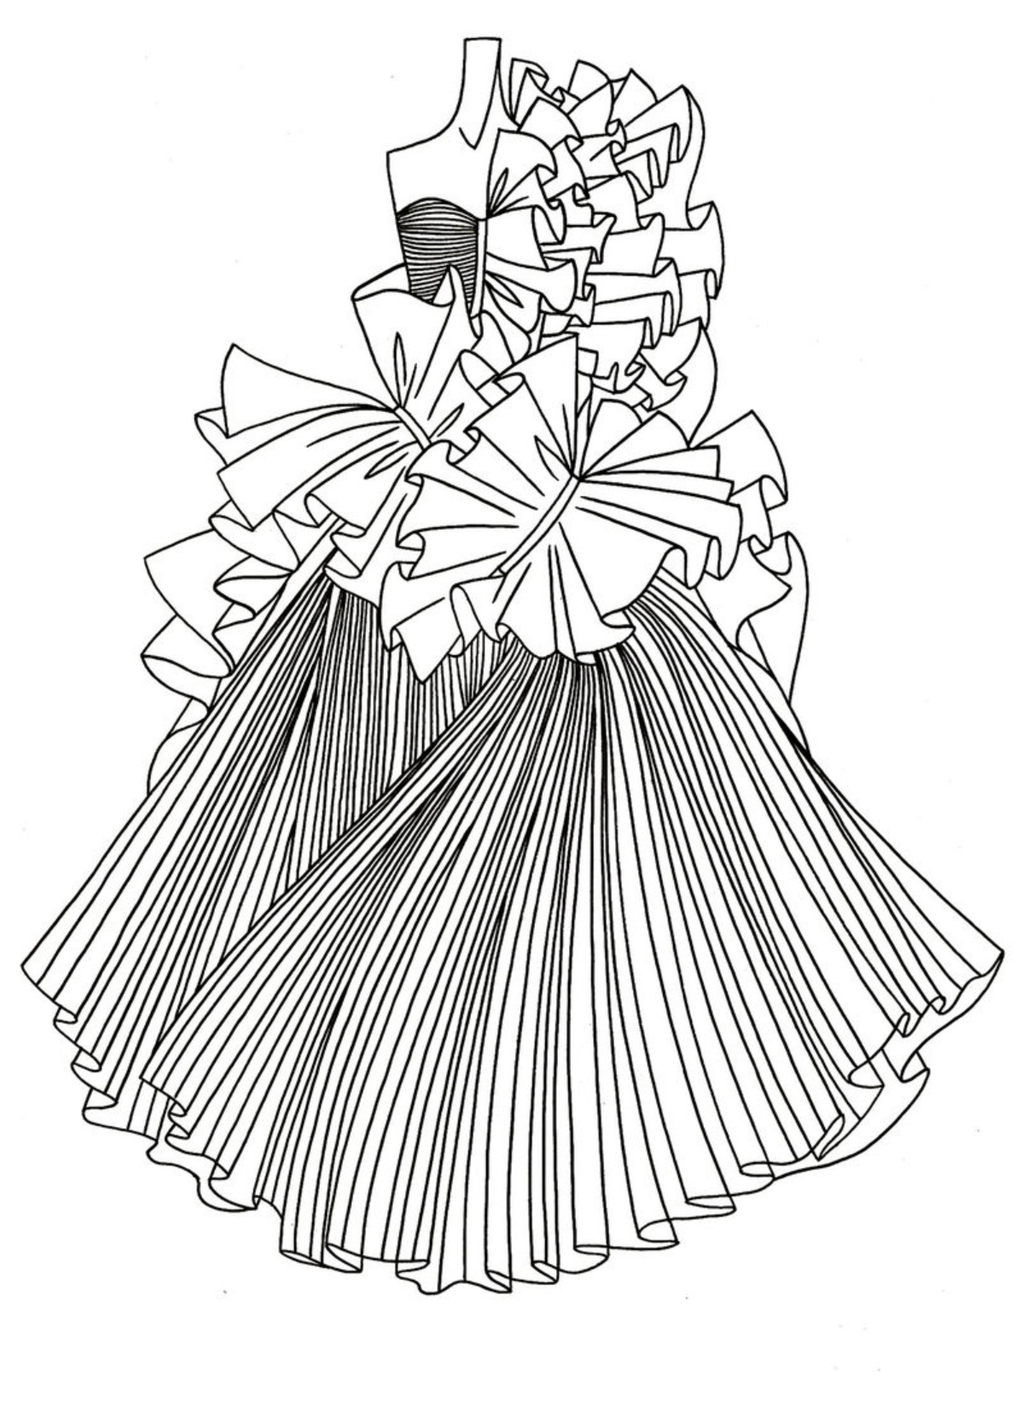 婚纱设计手稿模板下载(图片编号:12011532)_裙